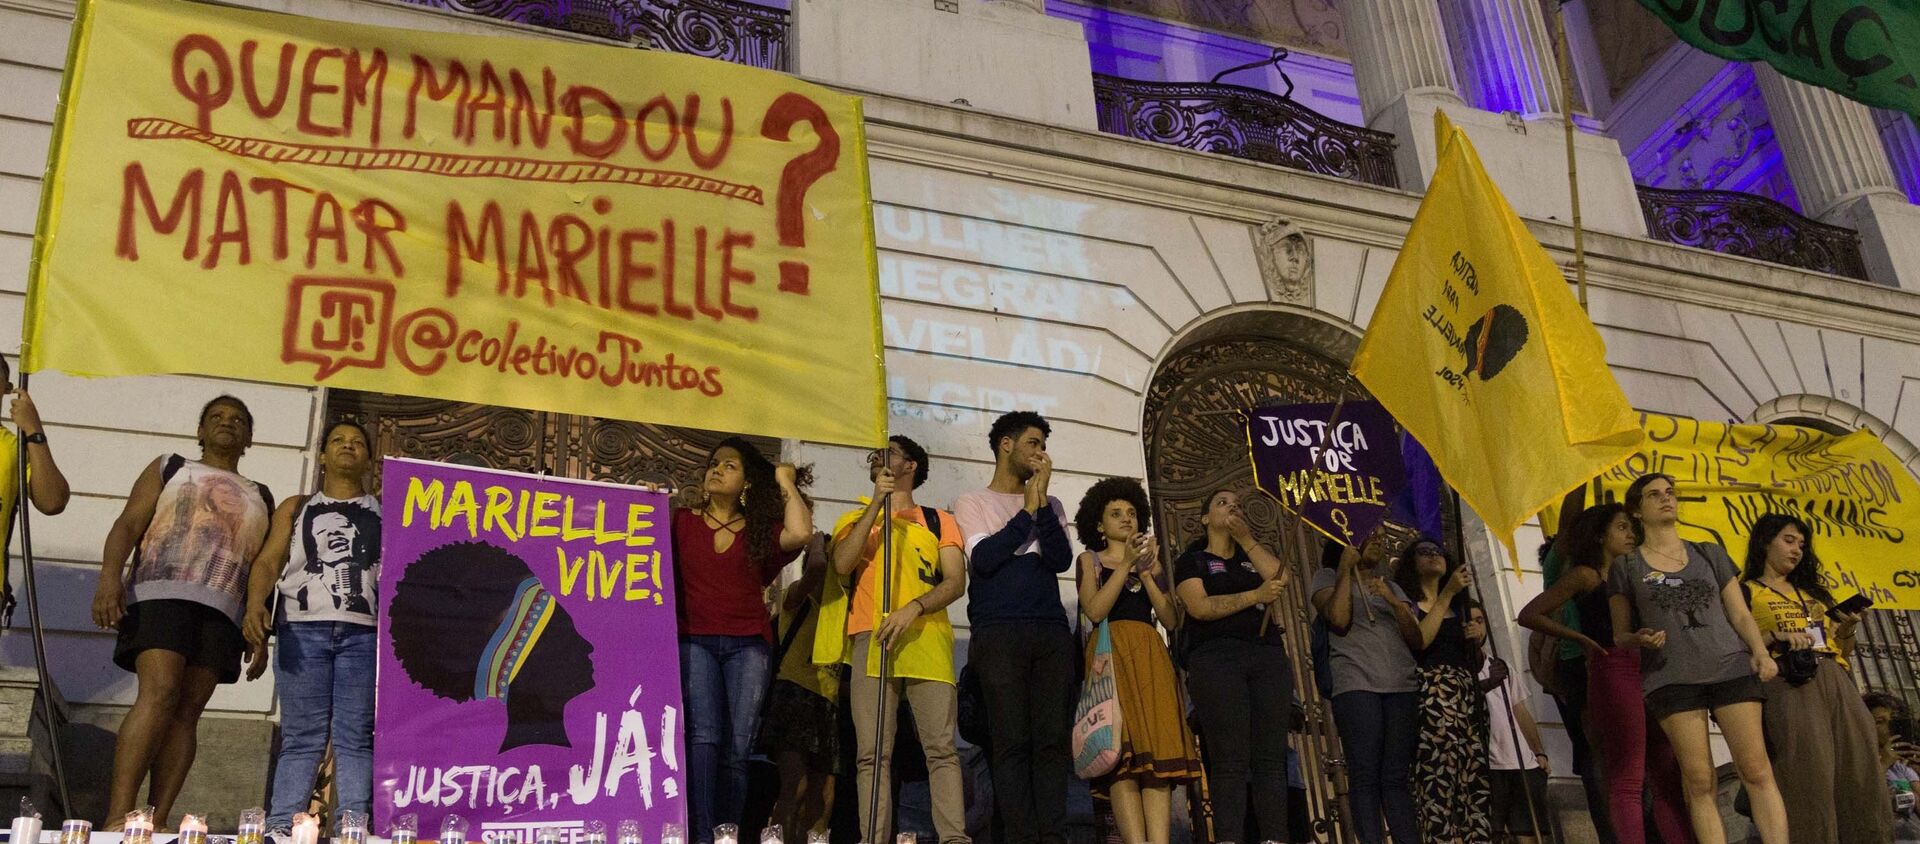 Protesto Quem Mandou Matar Marielle? no Rio de Janeiro (RJ), nesta sexta-feira (01), com presença de políticos e familiares da vereadora - Sputnik Brasil, 1920, 01.11.2019